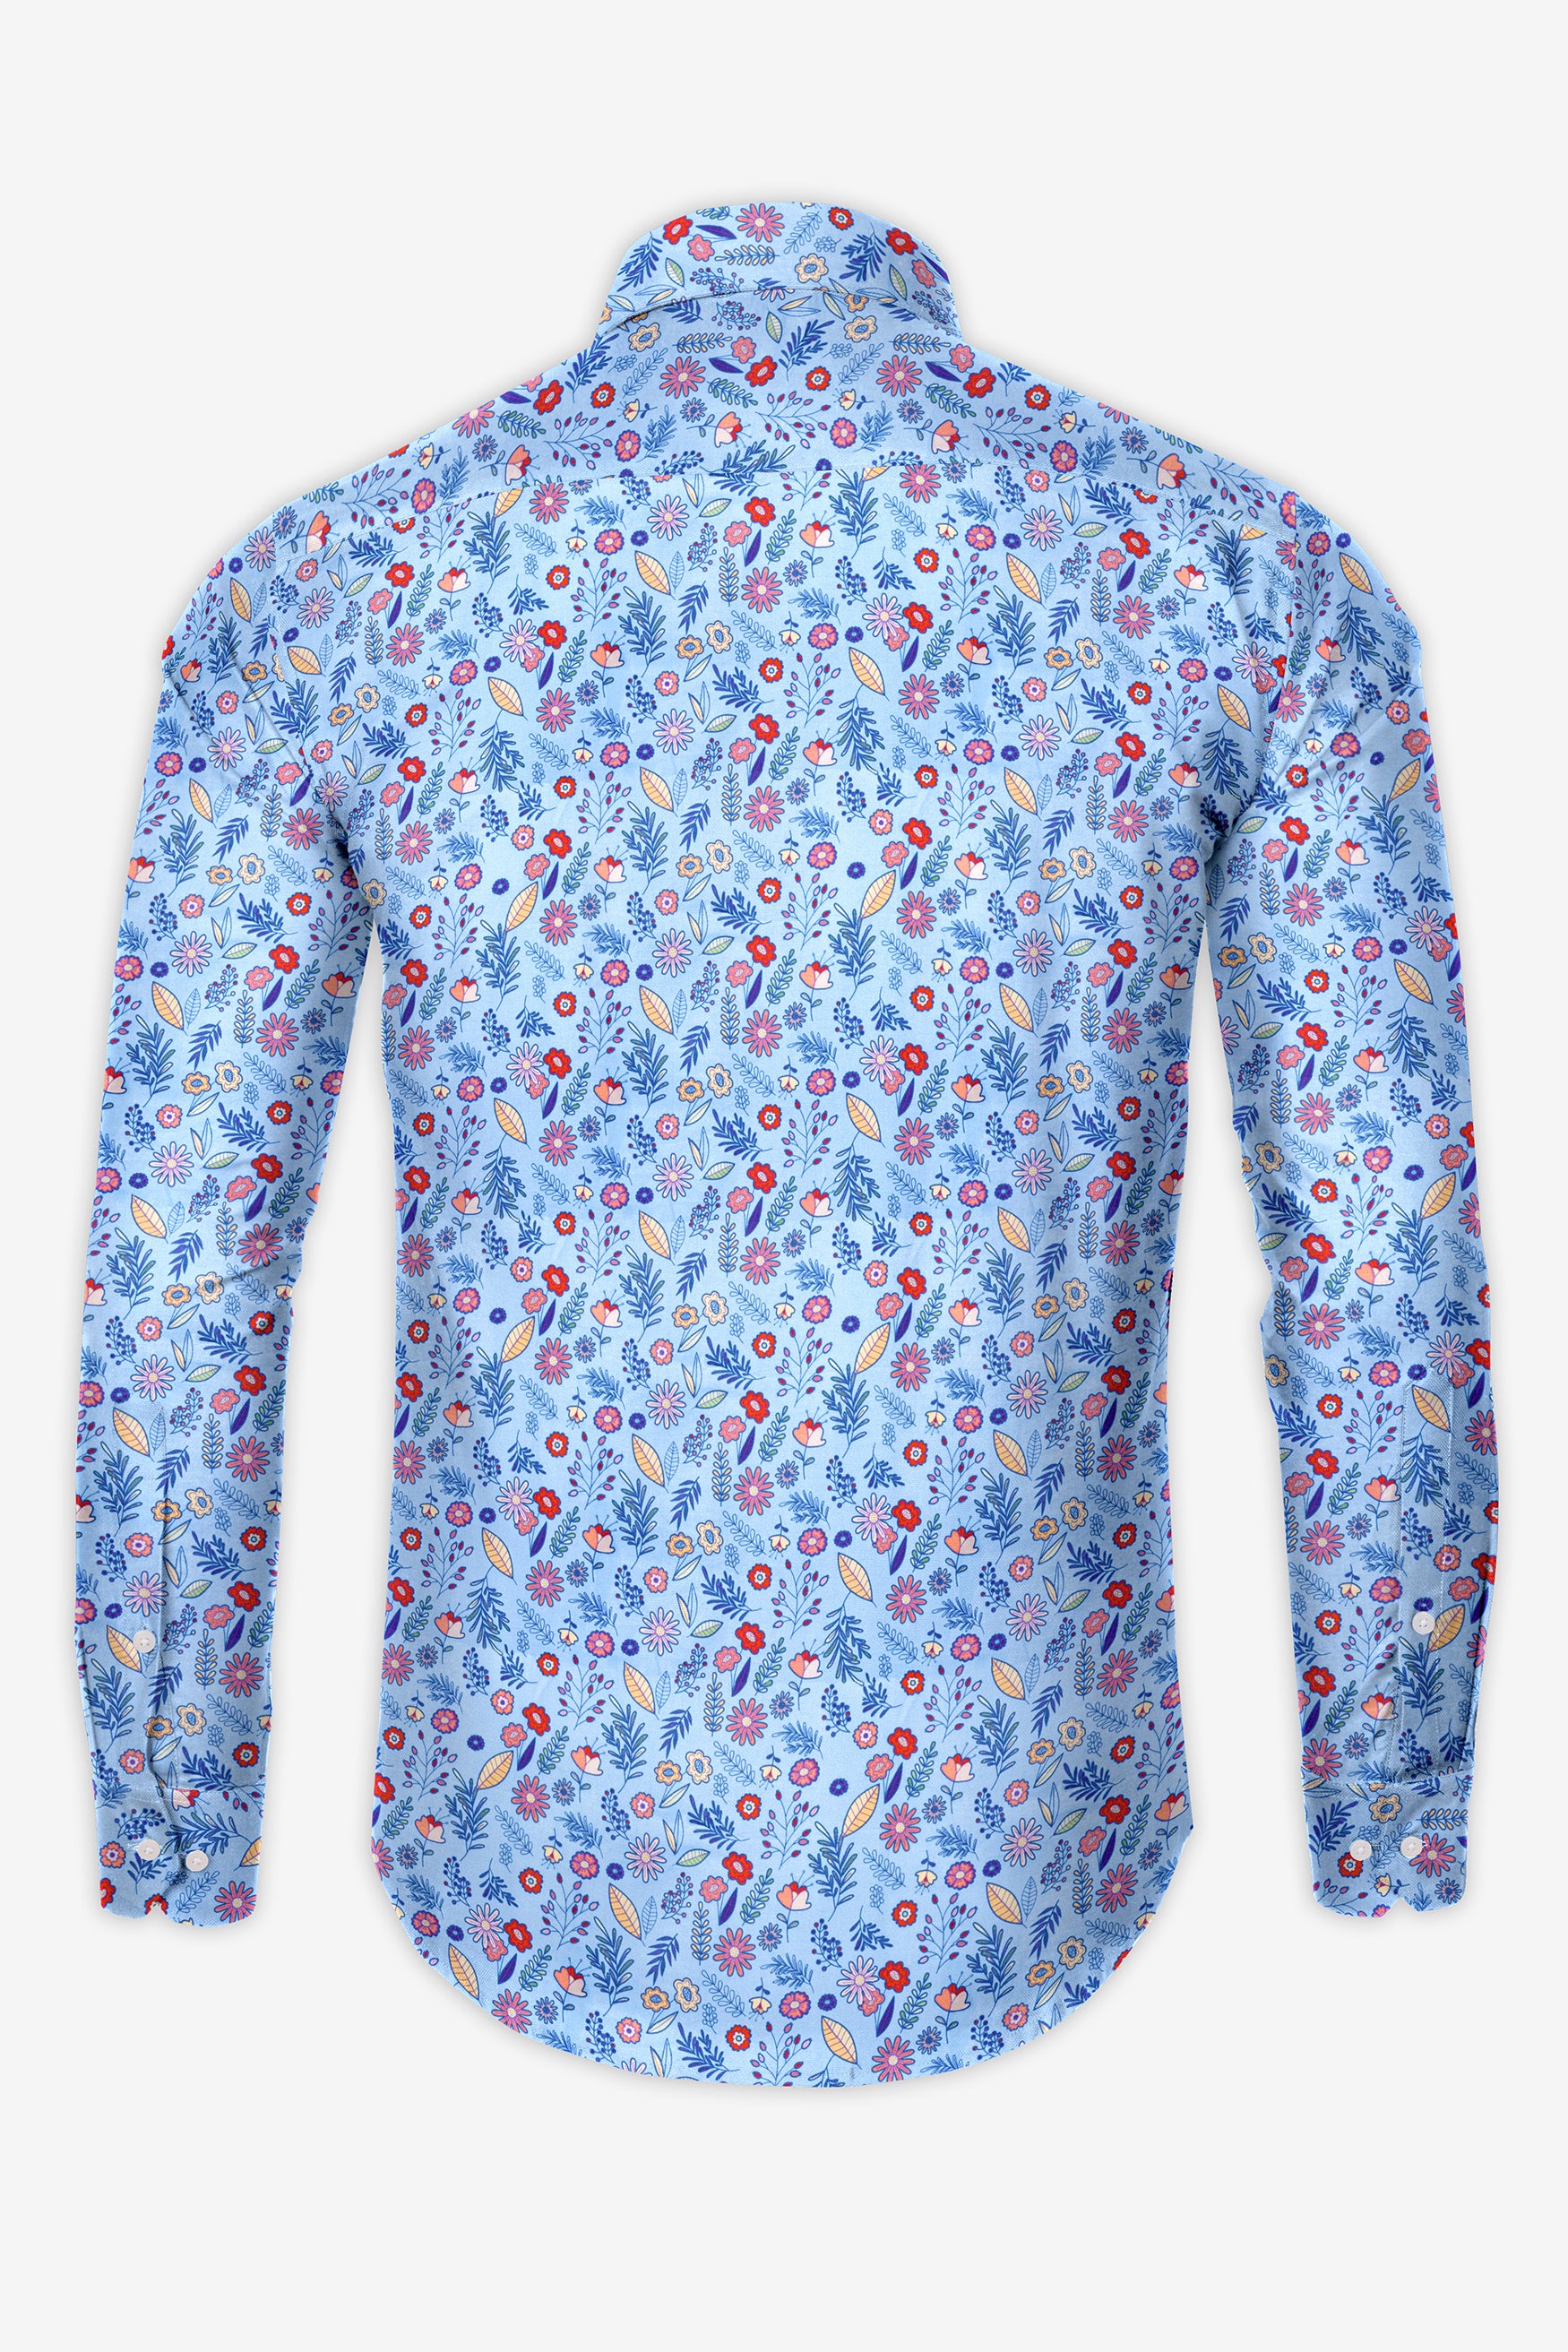 Spindle Blue Multicolor Soimoi Japan Crepe Patterned Super Soft Premium Cotton Shirt